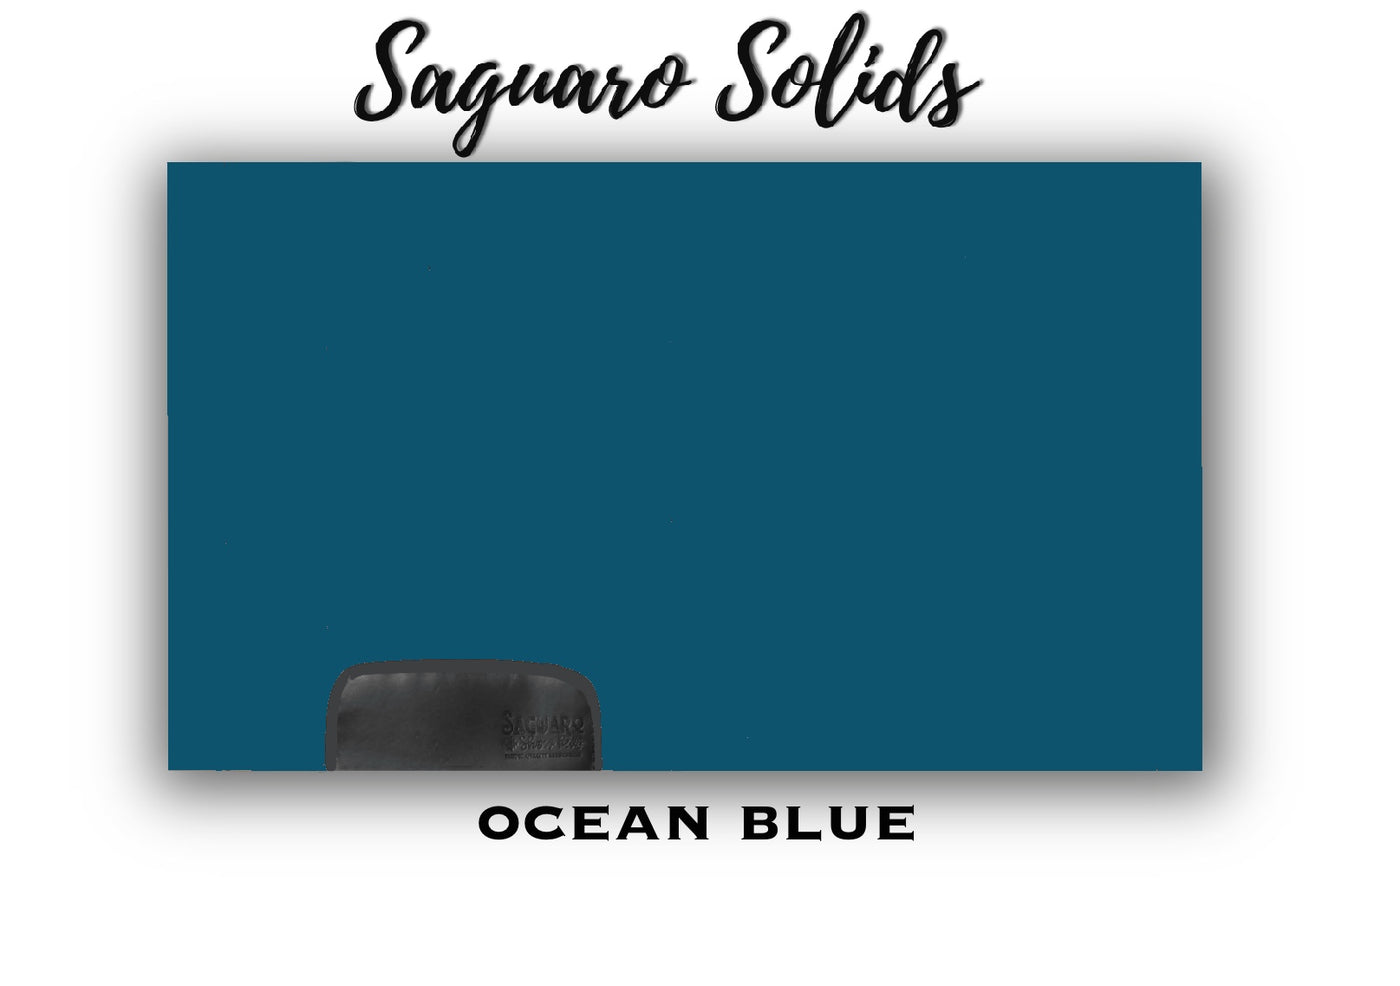 Saguaro Solid "Ocean Blue" Show Pad (SEMI-CUSTOM)